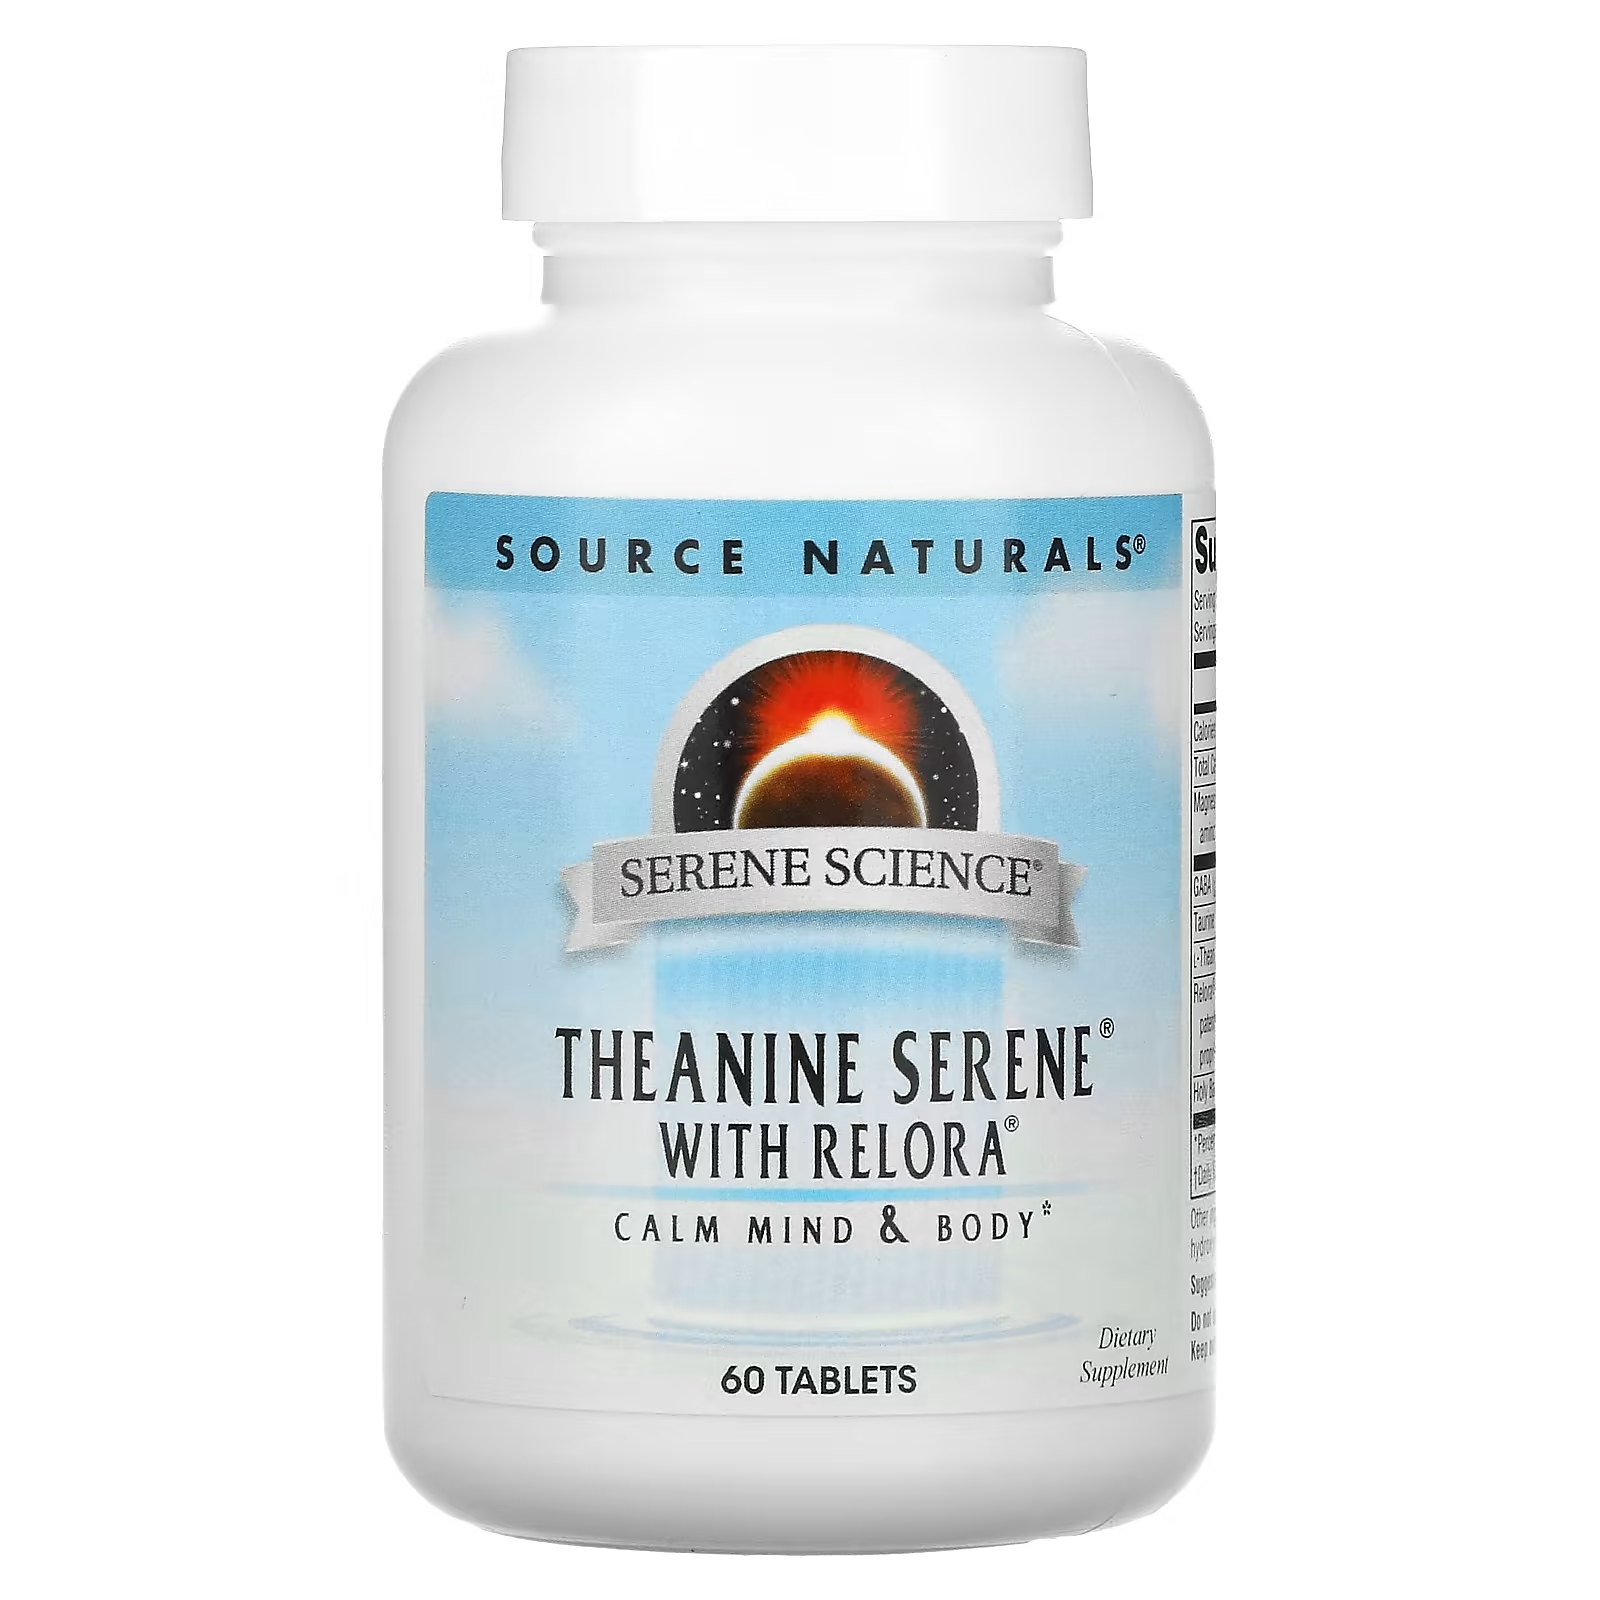 Source Naturals Serene Science Theanine Seren теанин с комплексом Relora, 60 таблеток source naturals serene science theanine serene 60 таблеток